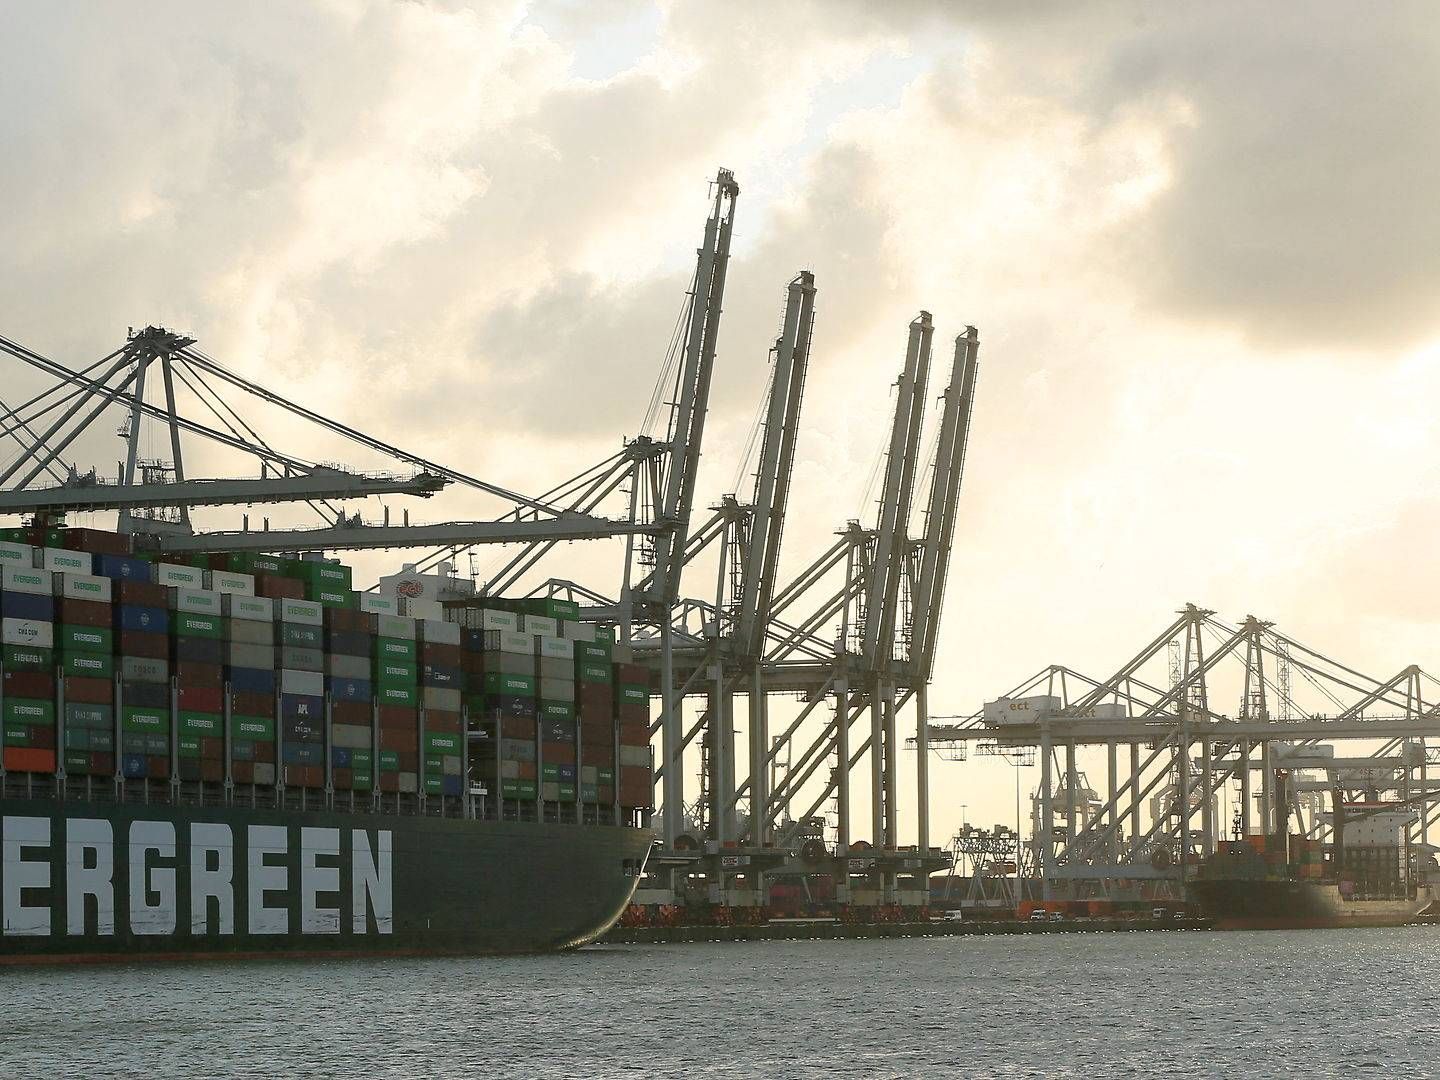 Containerskibet Ever Given, som i marts 2021 blokerede Suez-kanalen er i dok i Rotterdam havn i juli 2021. REUTERS/Eva Plevier/File Photo